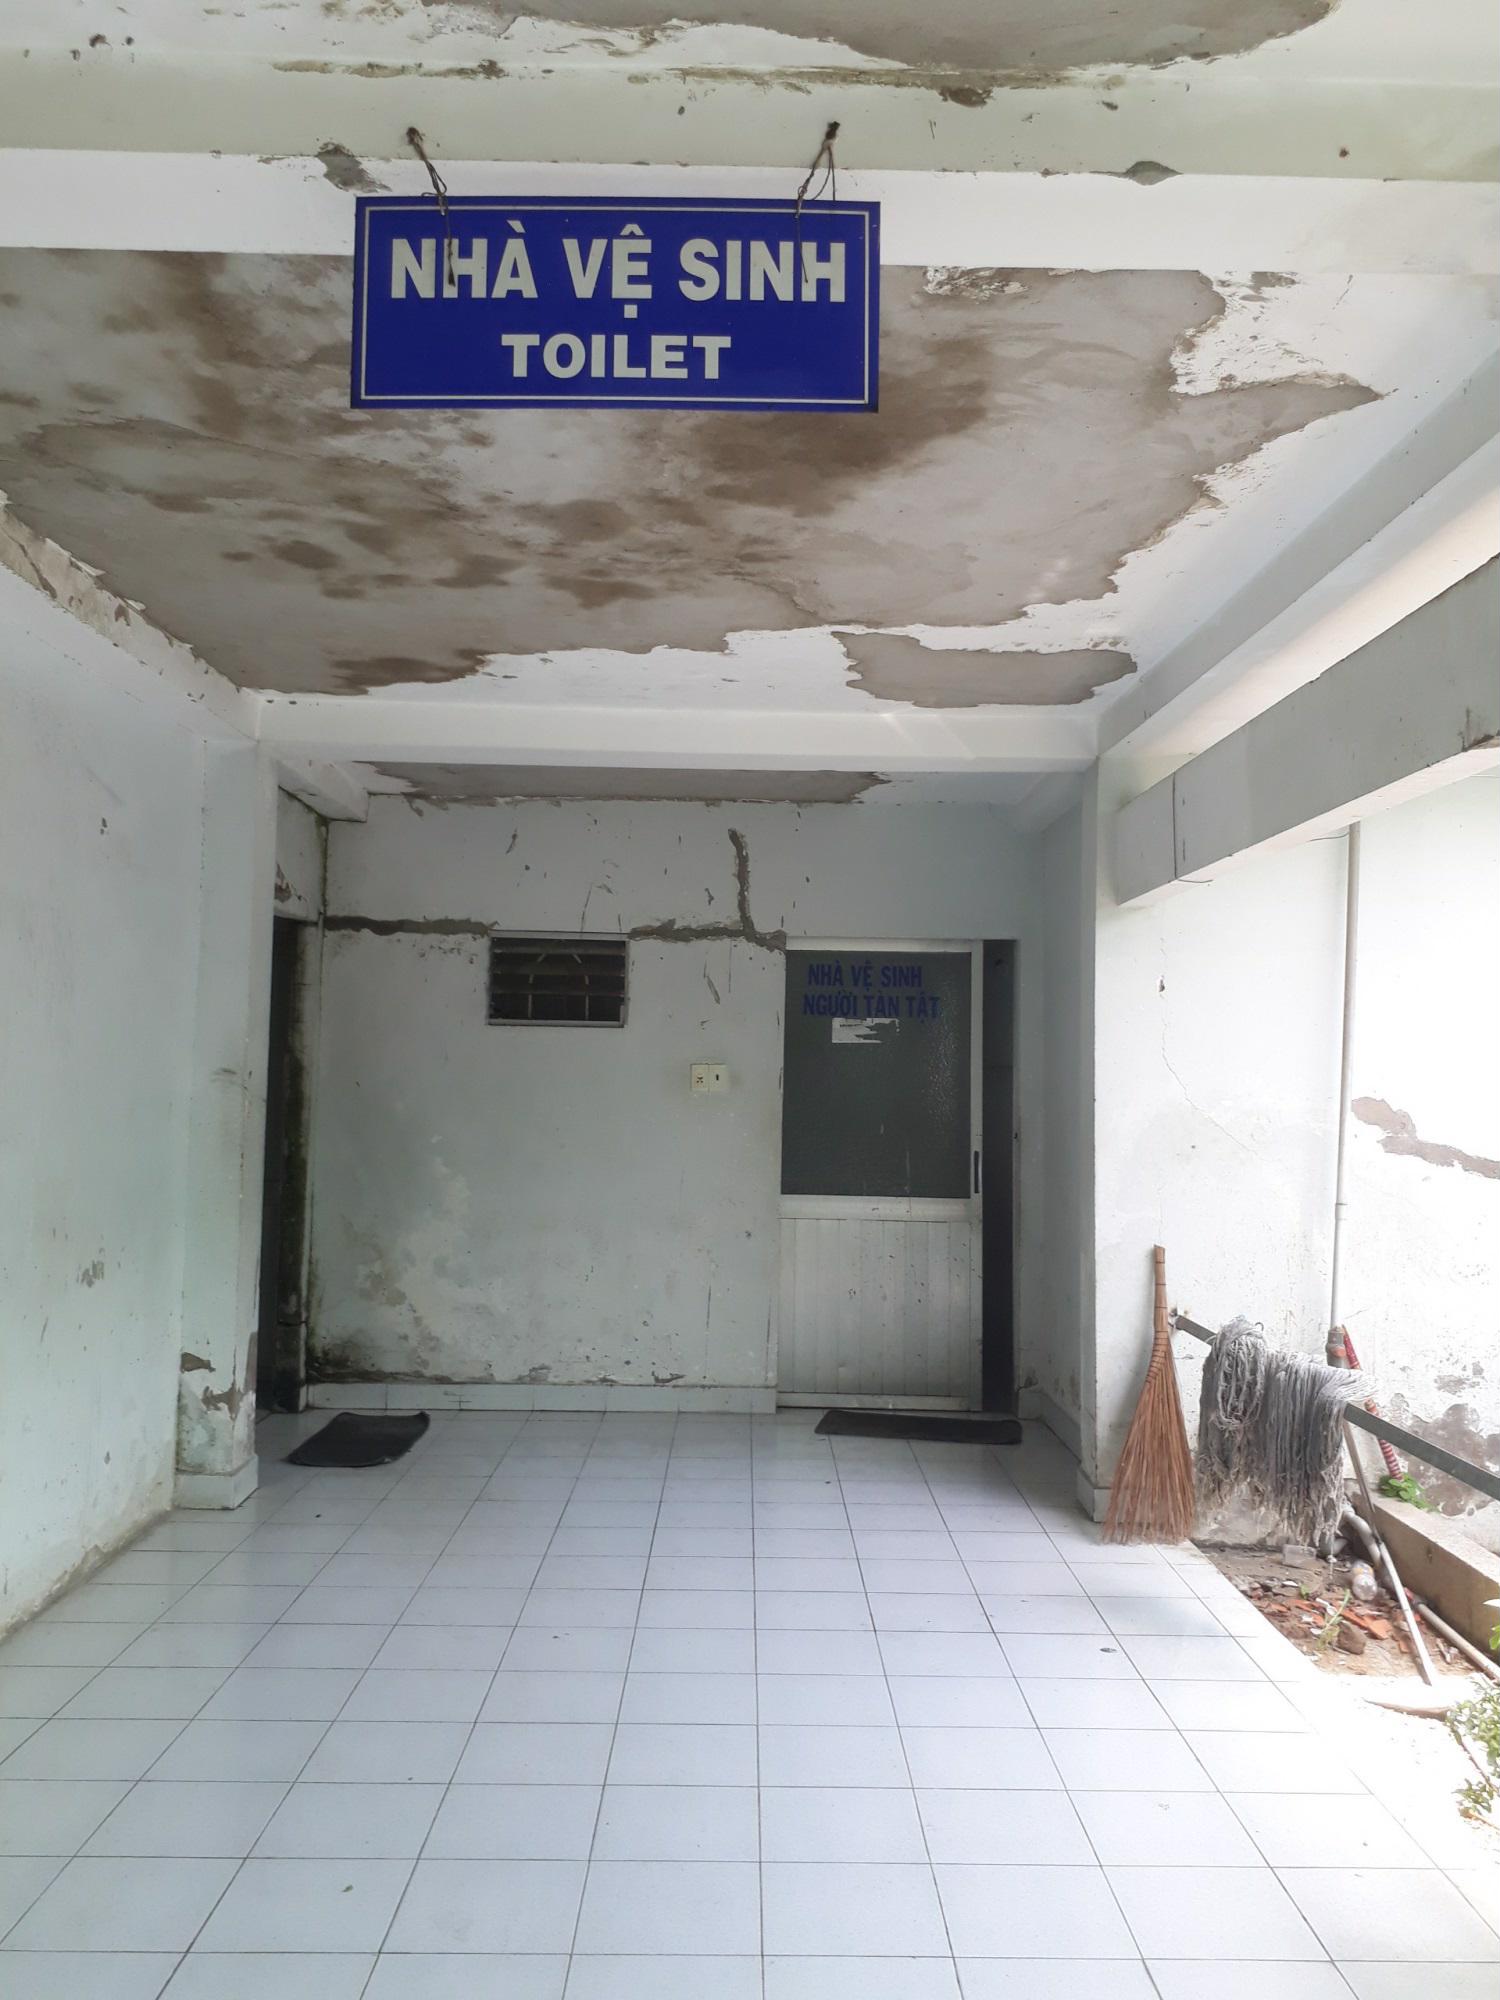 Sau phát biểu của Bộ trưởng Bộ Y tế, nhà vệ sinh bệnh viện ở TP.HCM như thế nào? - Ảnh 2